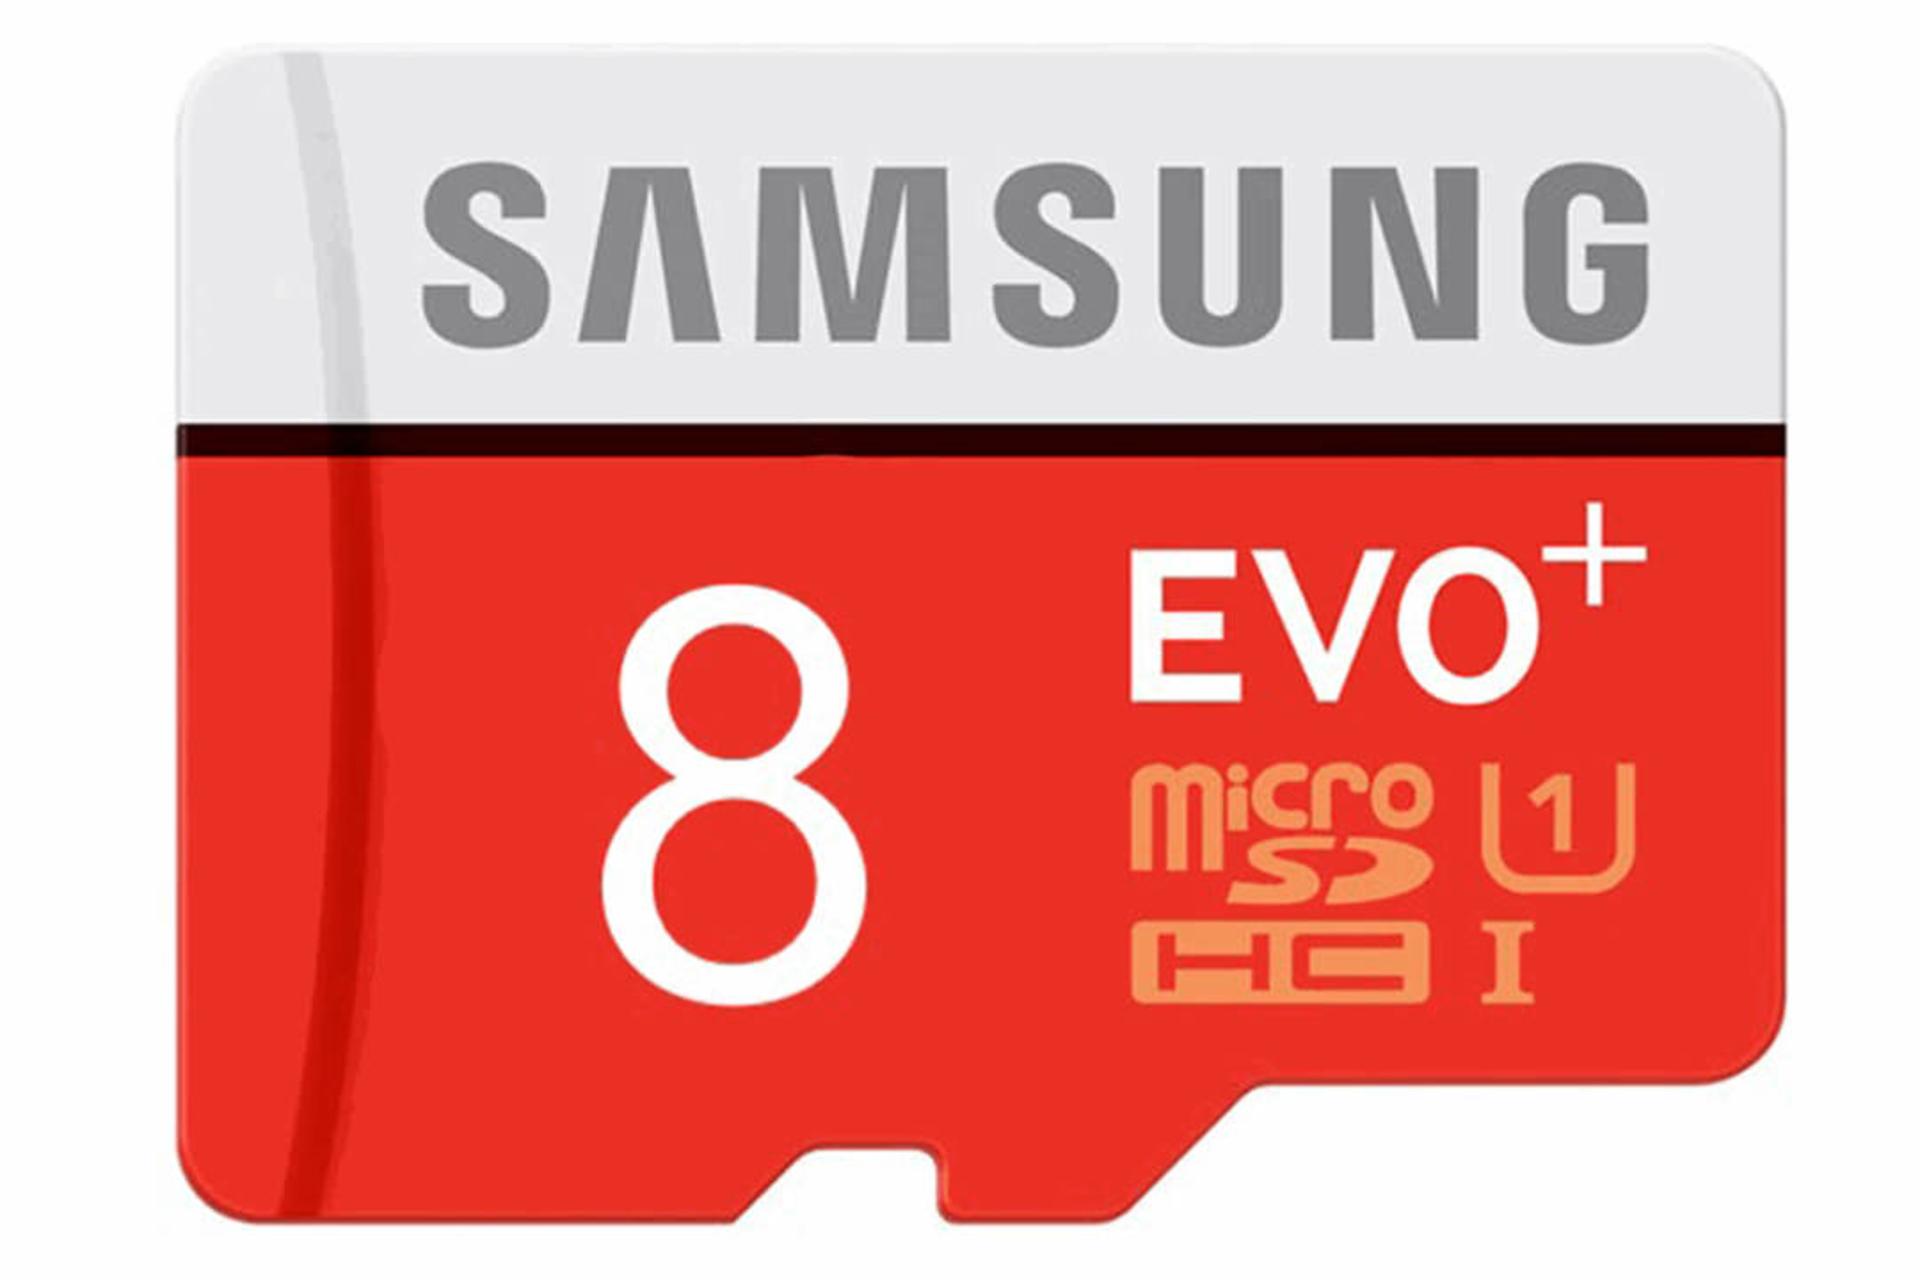 مرجع متخصصين ايران Samsung Pro microSDHC Class 10 UHS-I U1 8GB